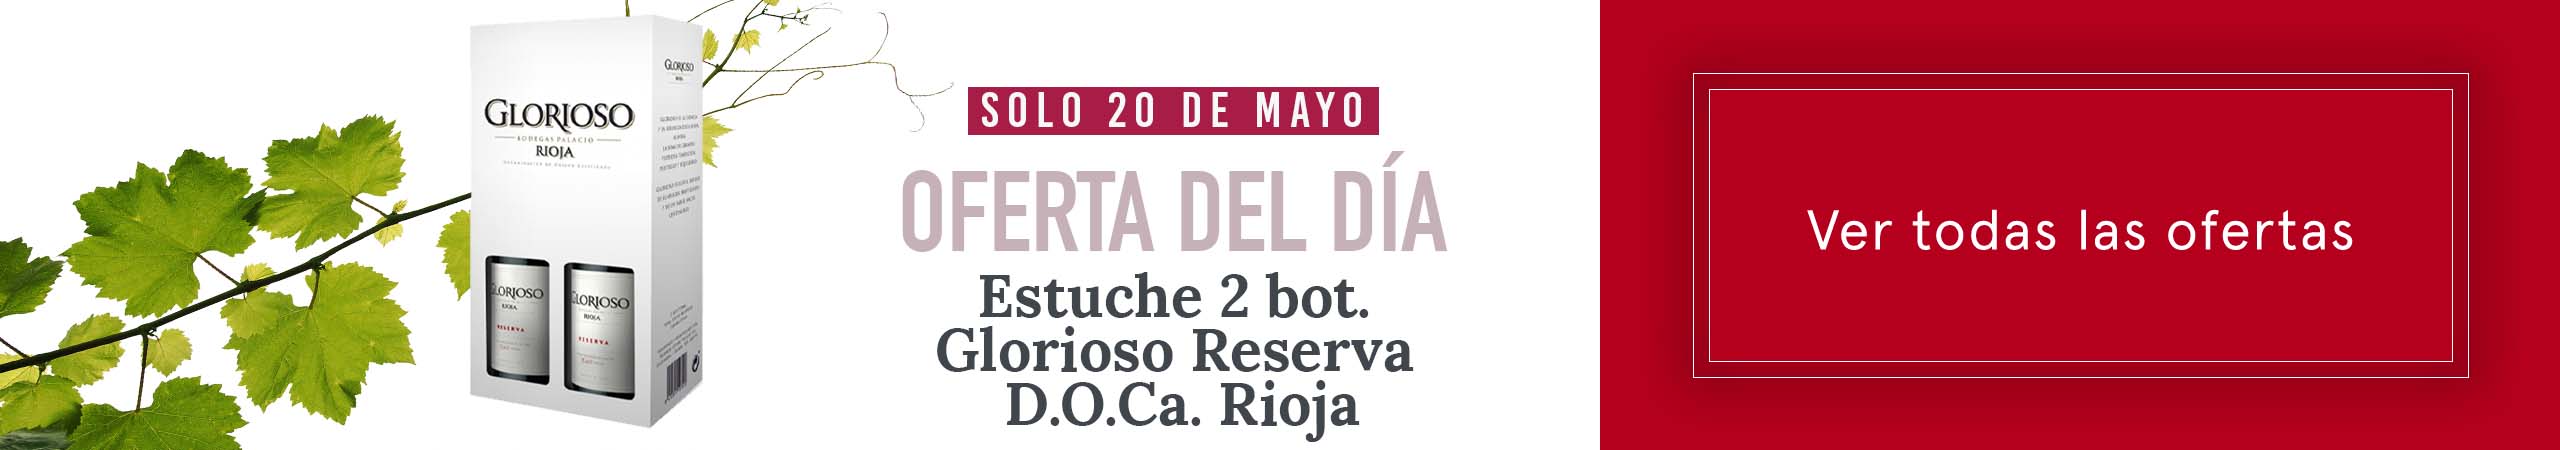 Ver ofertas - Estuche 2 bot. Glorioso Reserva - D.O.Ca. Rioja